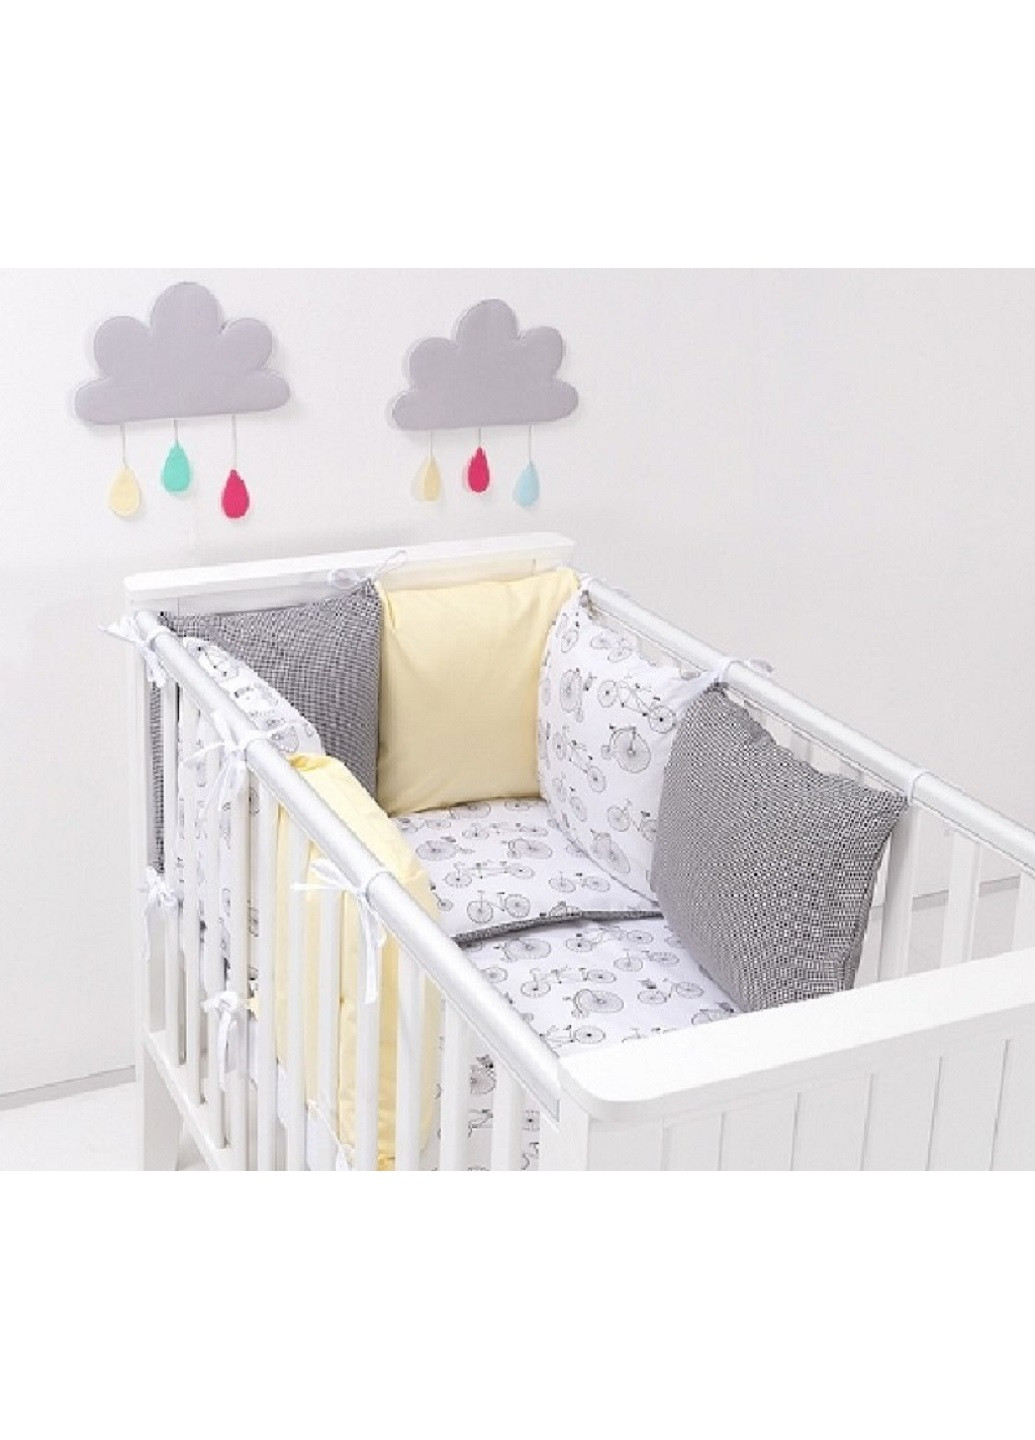 Комплект в детскую кроватку кровать люльку набор бортики защита на три стороны постельное белье ручной работы (28576-Нов) Unbranded (253188609)